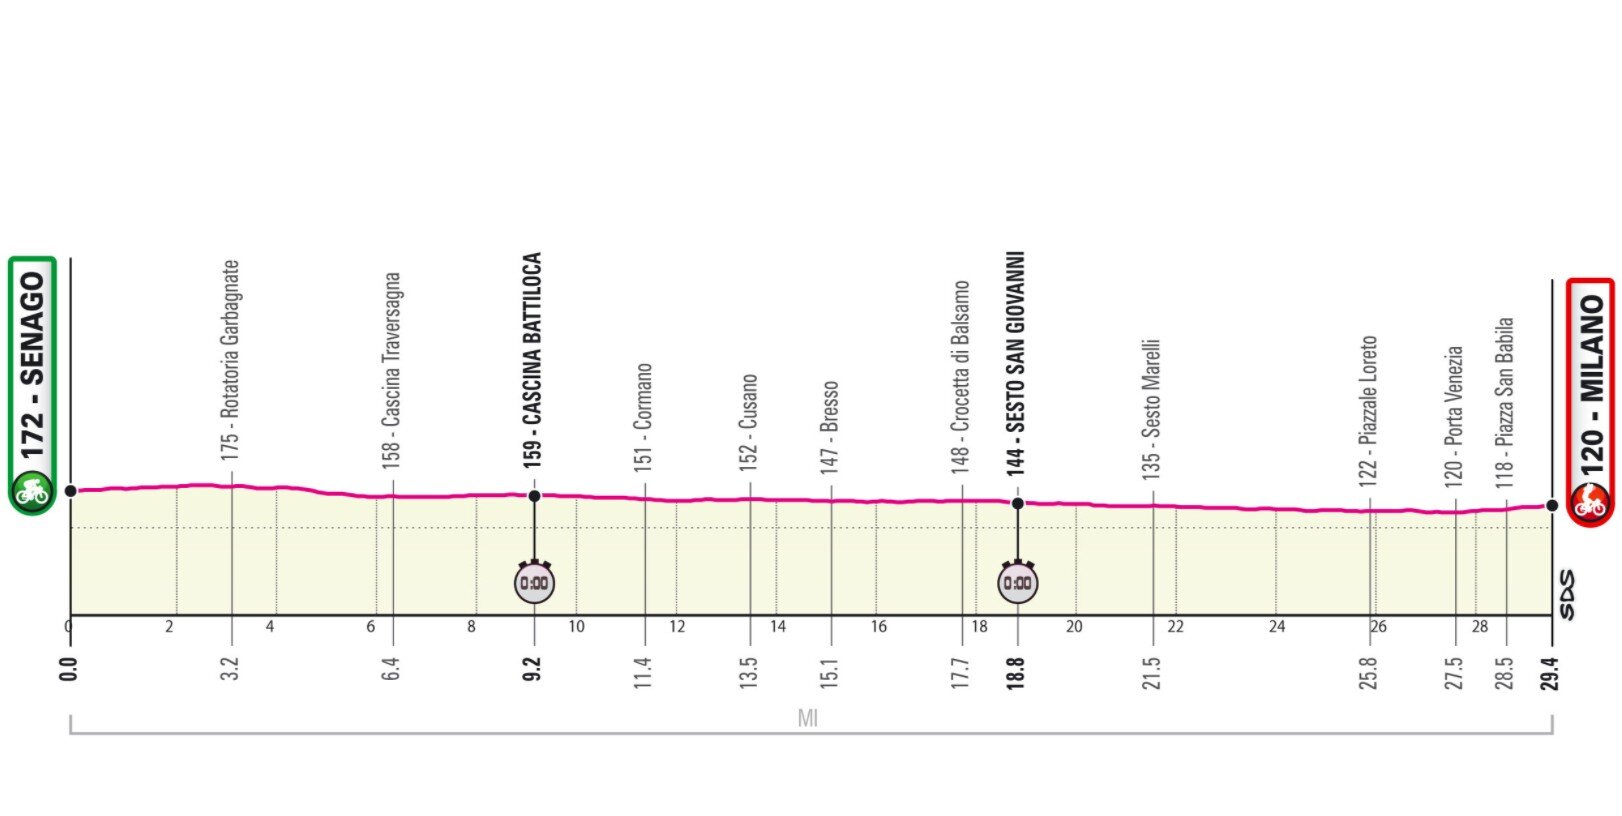 Etapa 21 Giro Italia 2021